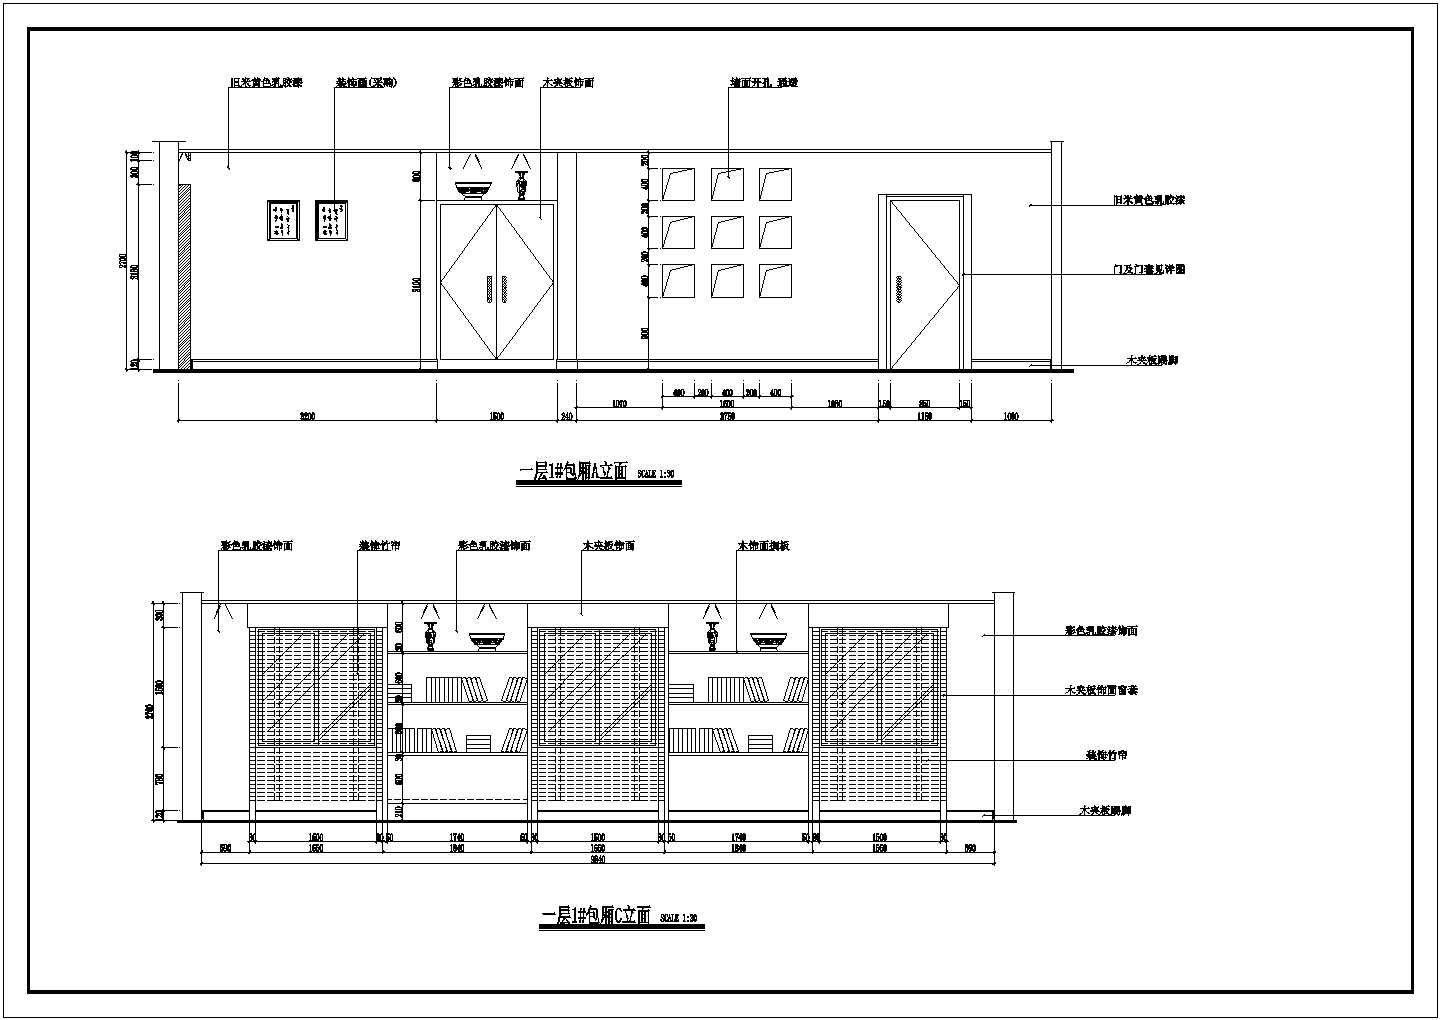 一套大型松岭居餐馆装修设计CAD图纸